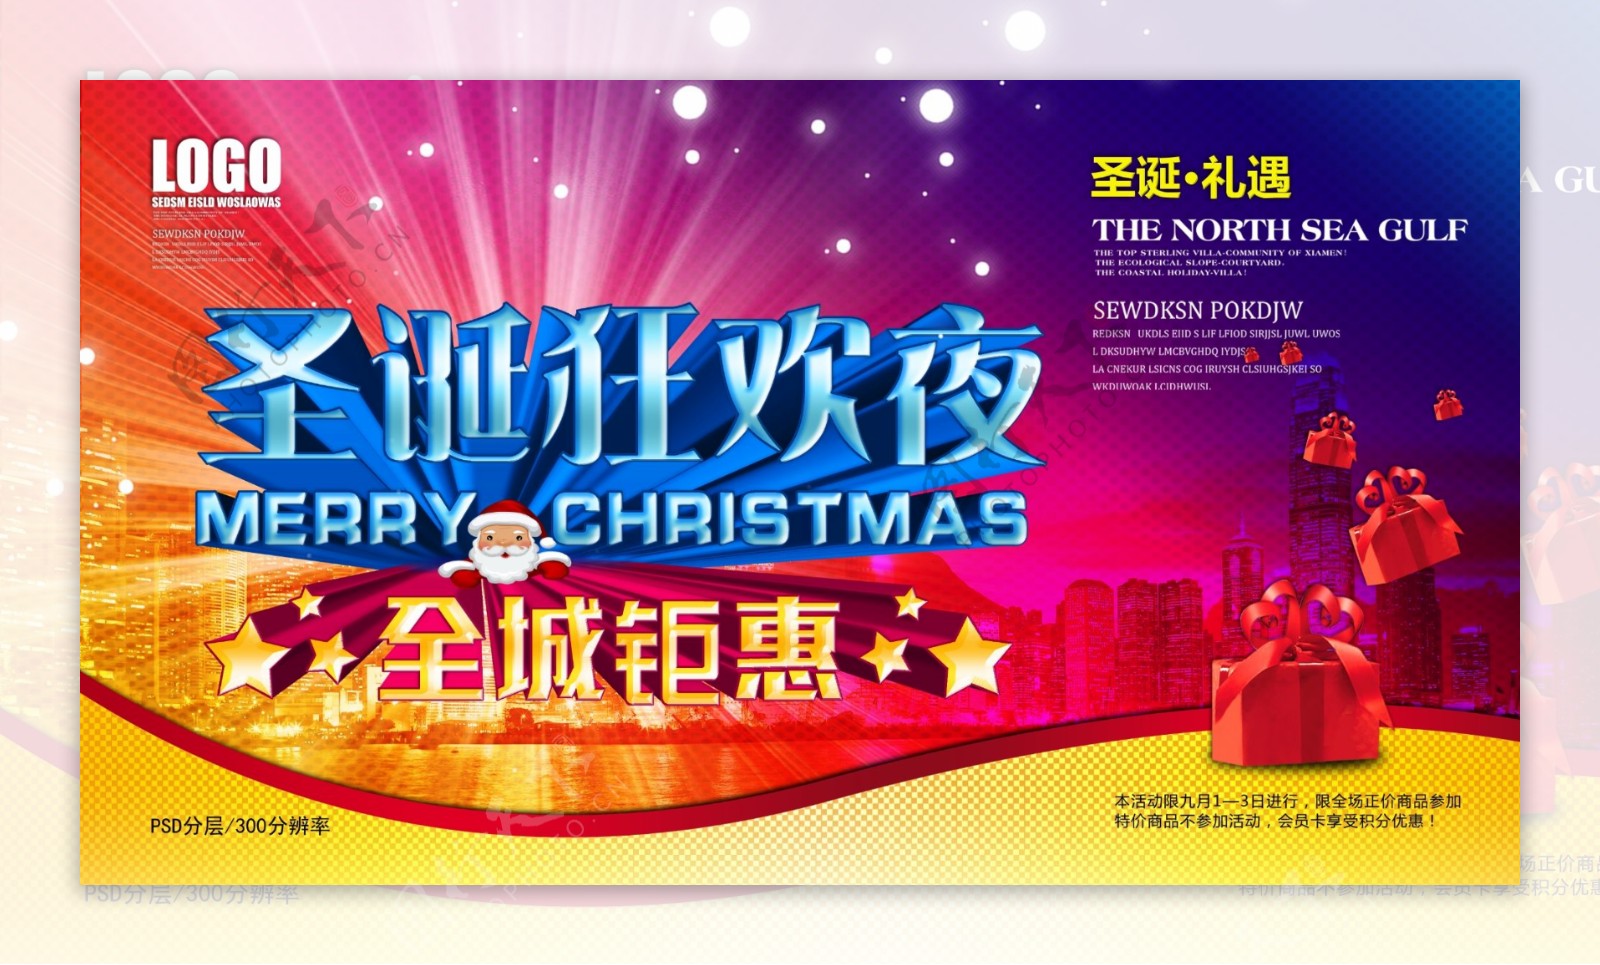 圣诞狂欢夜宣传海报设计PSD素材